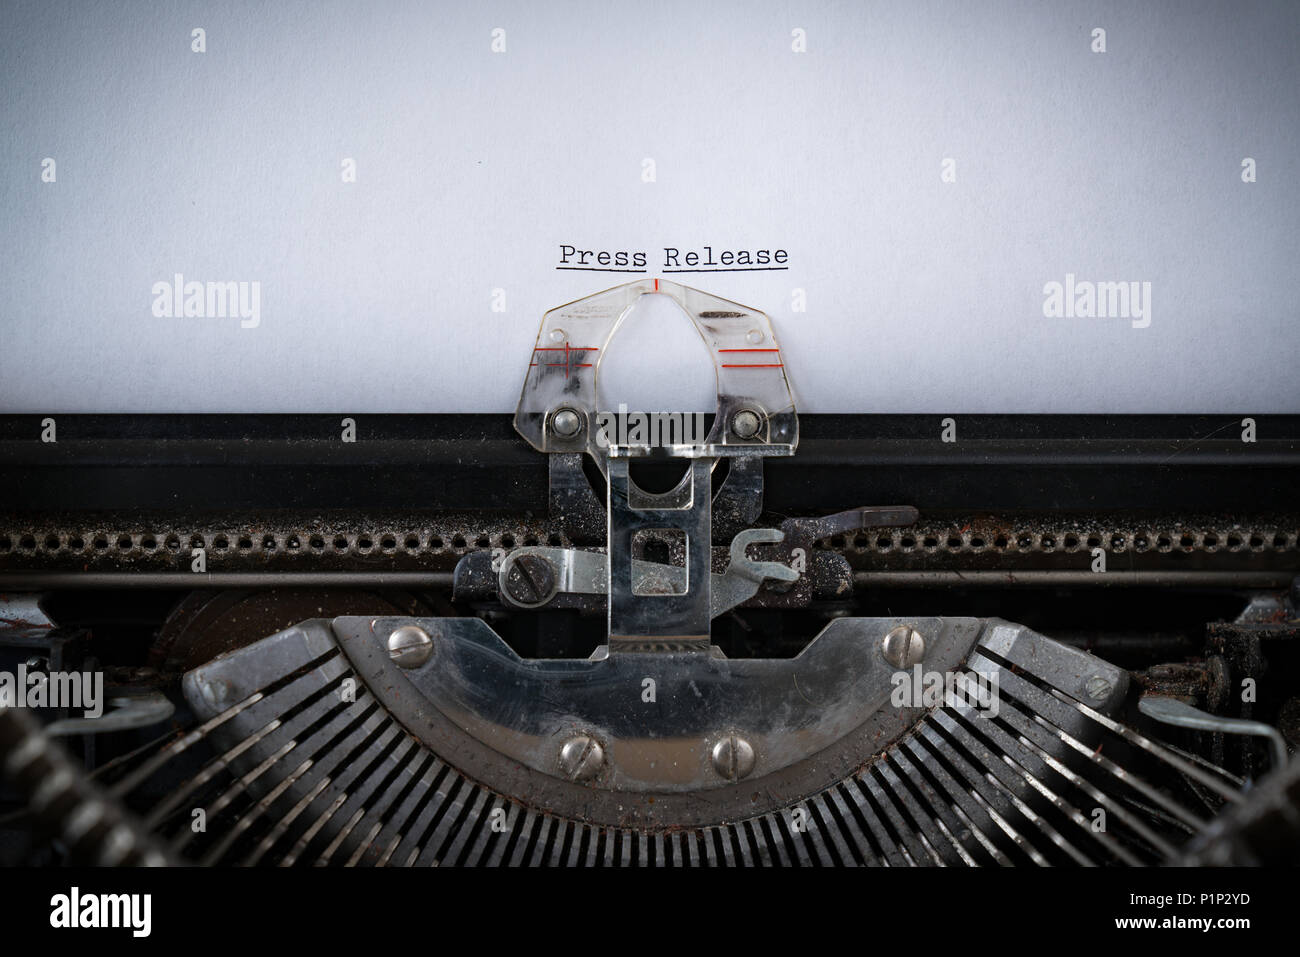 L'expression communiqué de presse dactylographié sur une vieille machine à écrire Banque D'Images